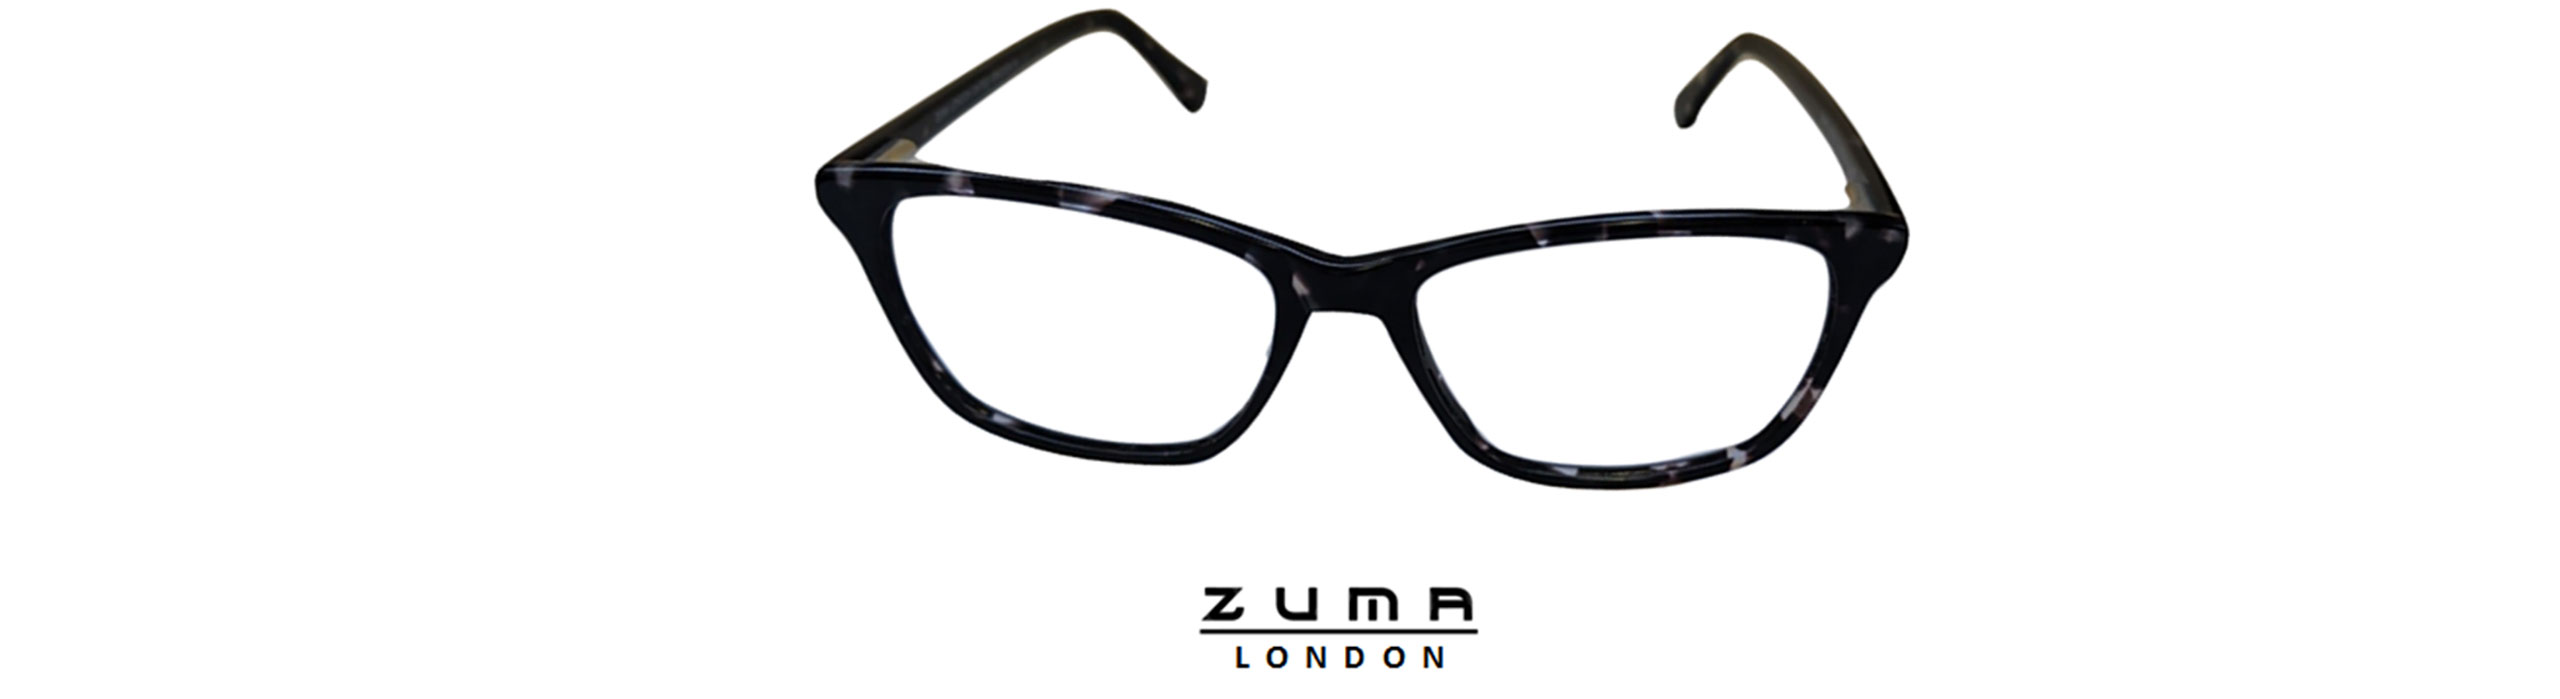 ZUMA eyewear